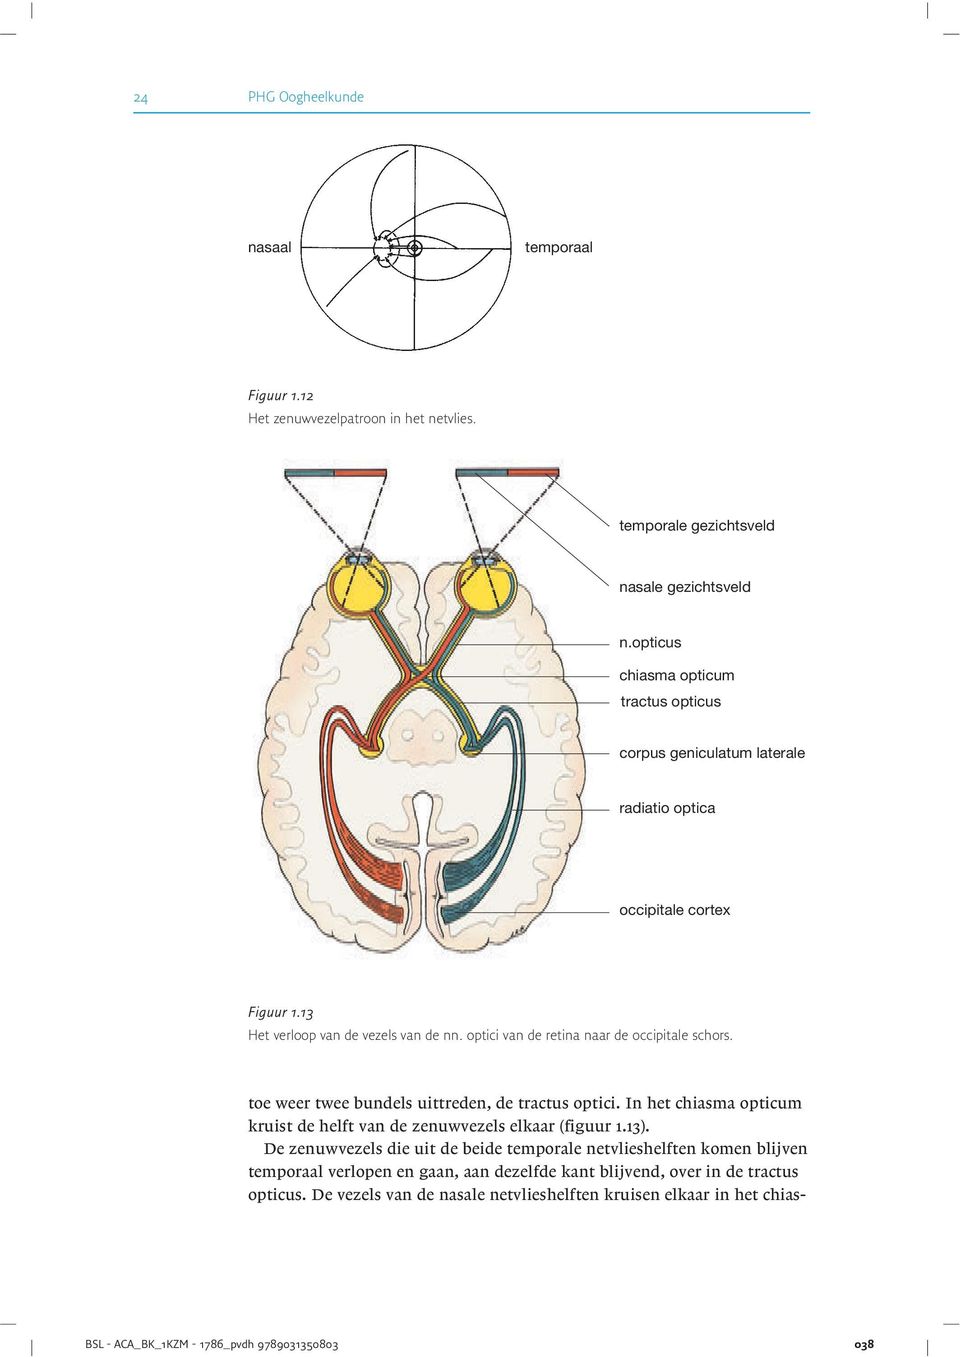 De vezels van de nasale netvlieshelften kruisen elkaar in het chiasnasaal temporaal Figuur 1.12 Het zenuwvezelpatroon in het netvlies. temporale gezichtsveld nasale gezichtsveld n.